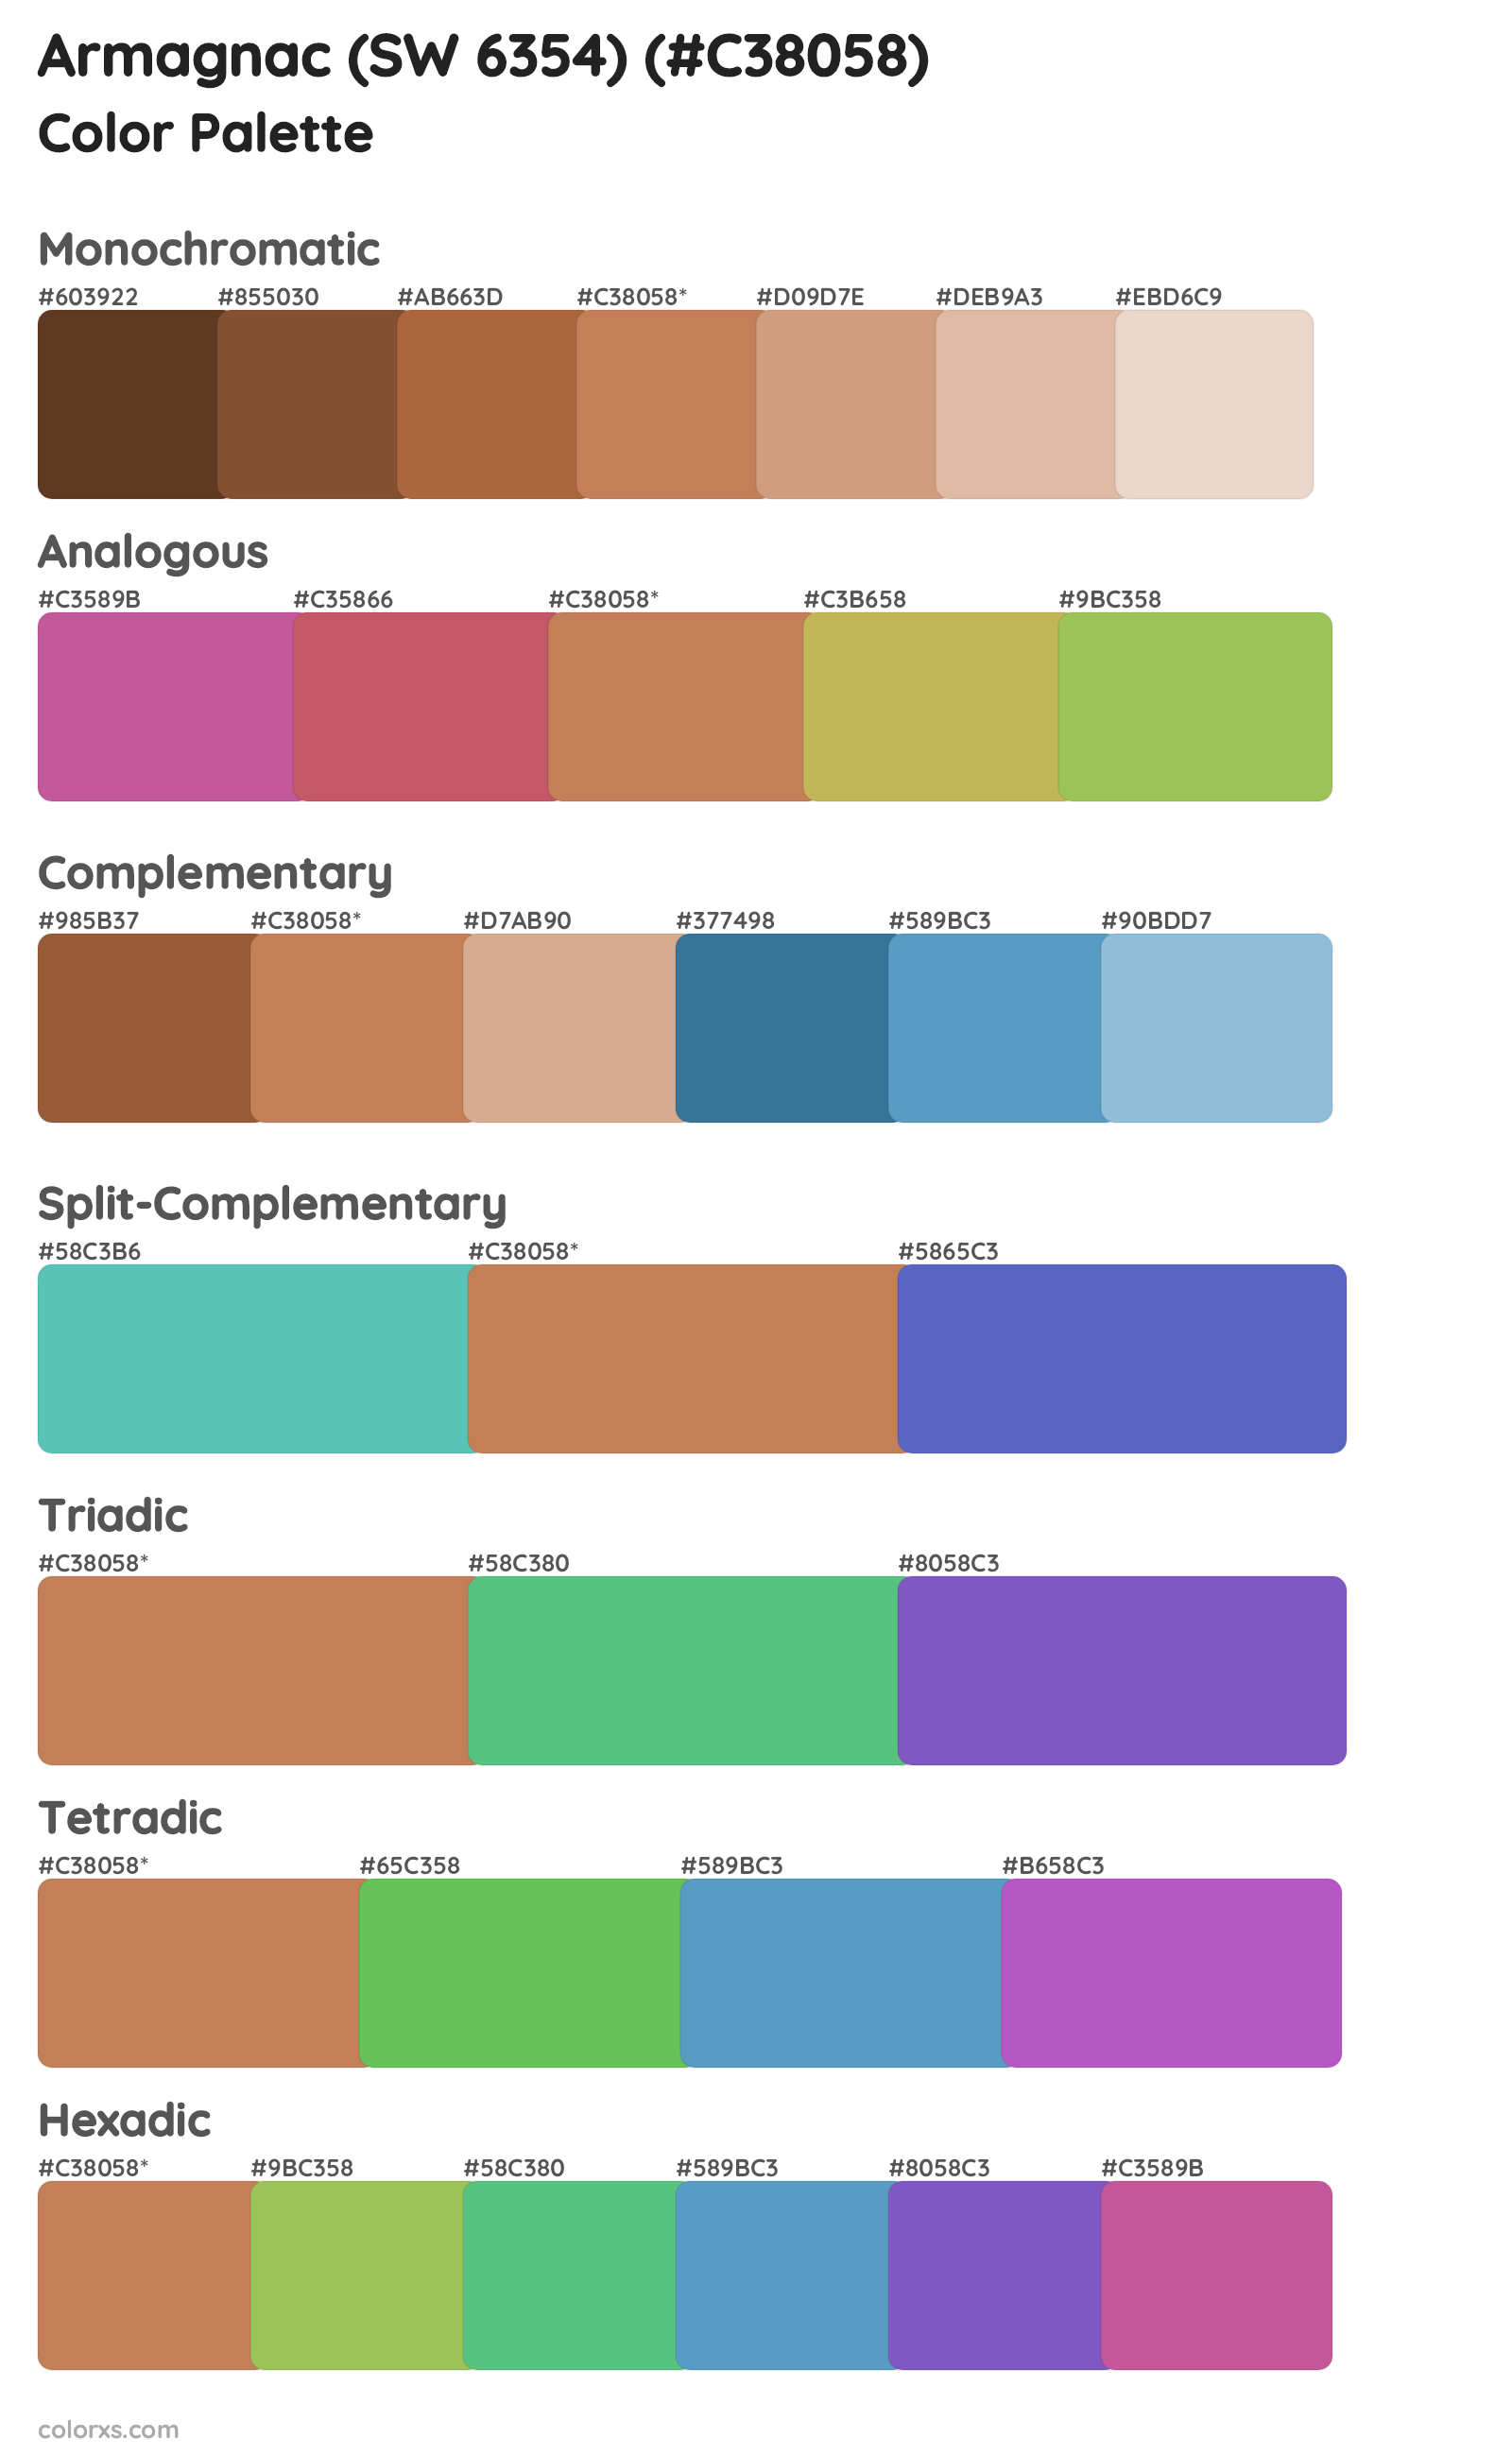 Armagnac (SW 6354) Color Scheme Palettes